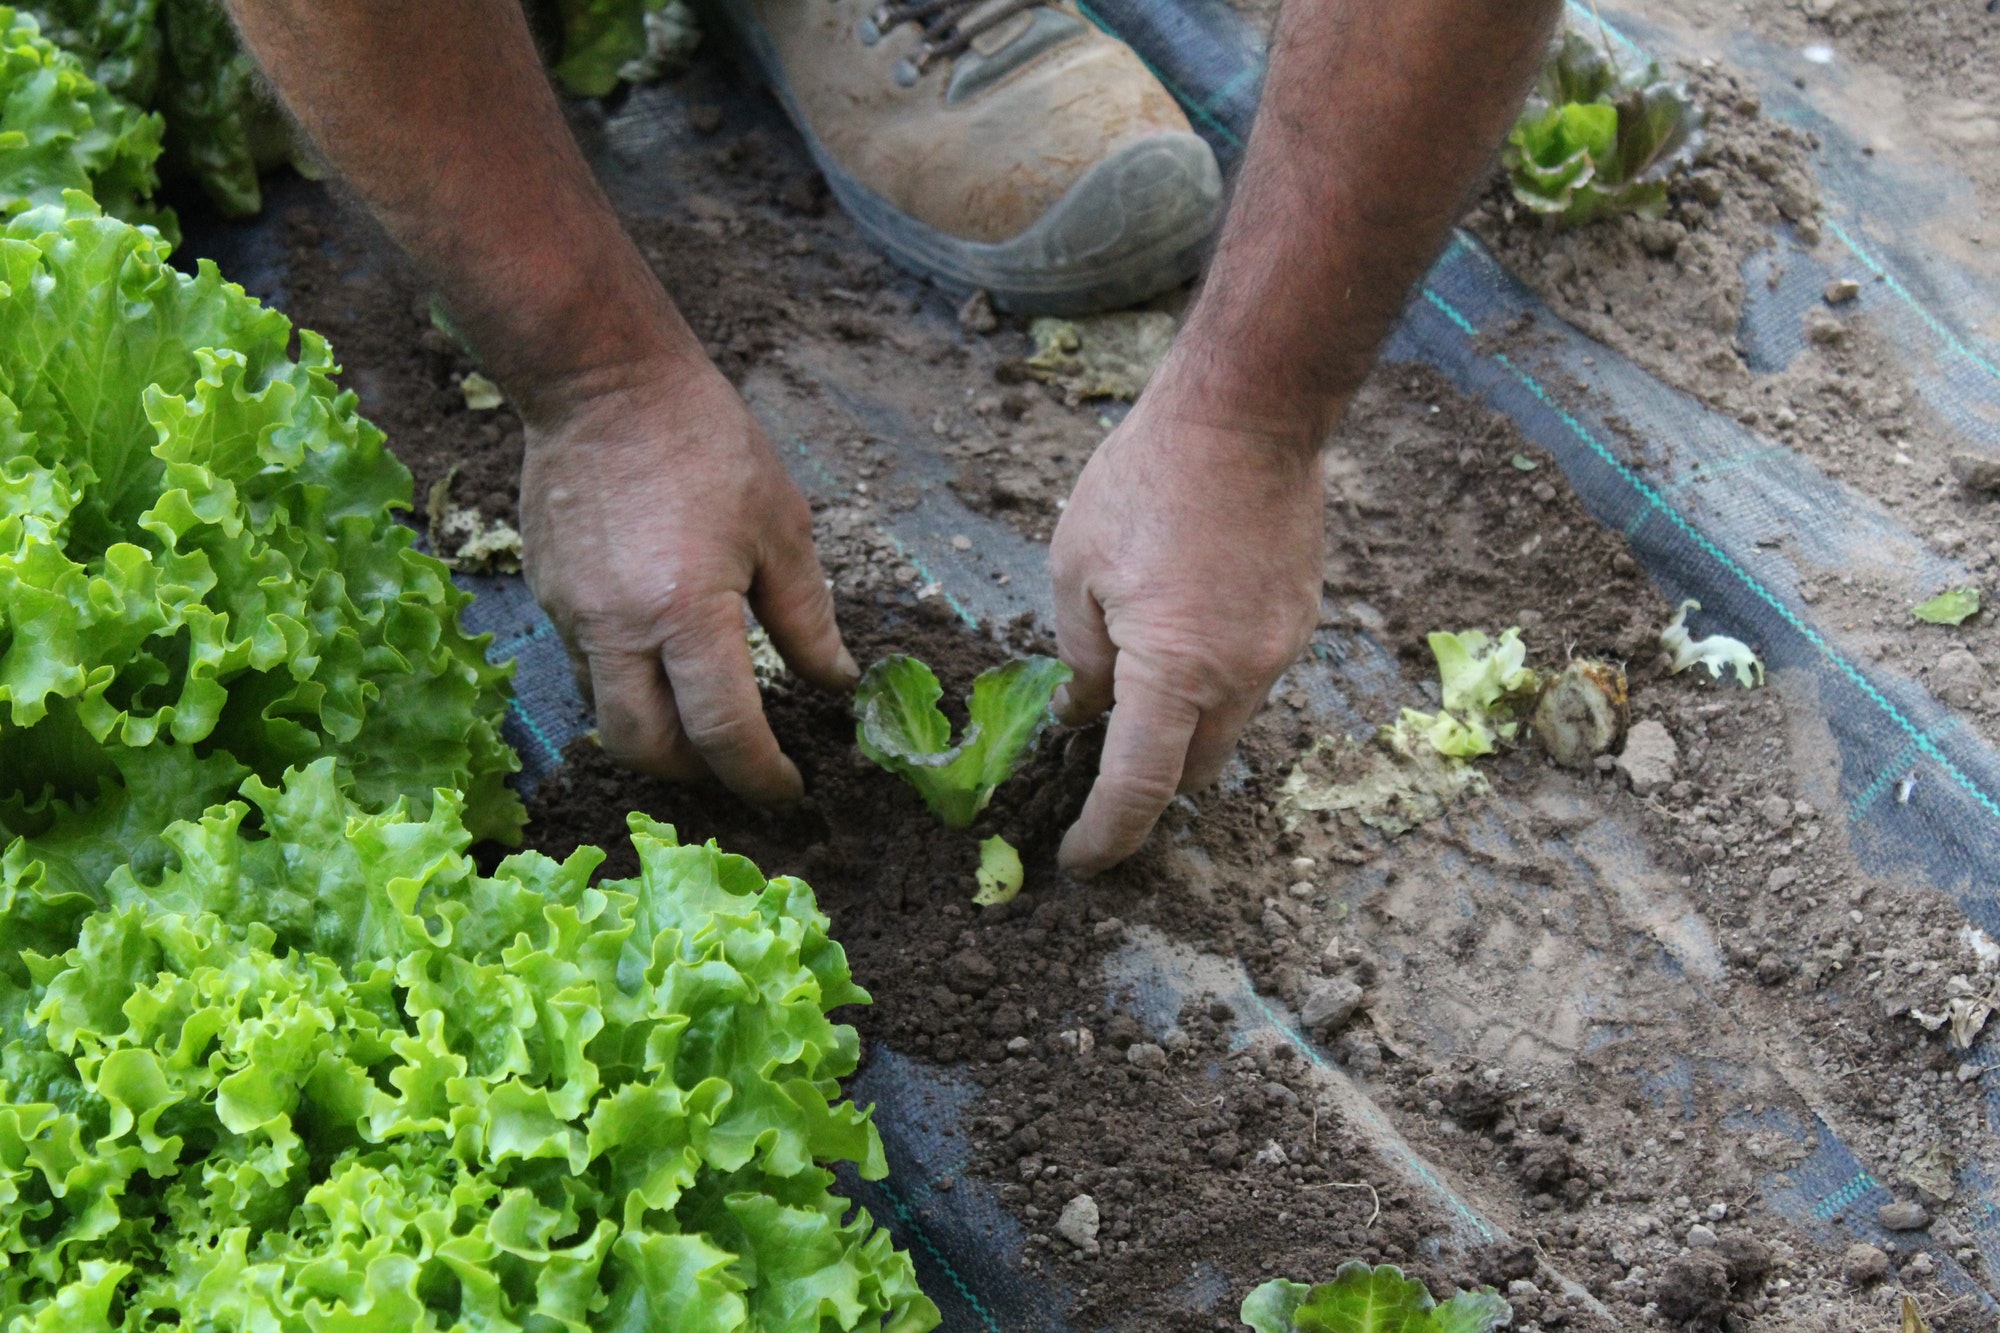 Gardening, planting salad